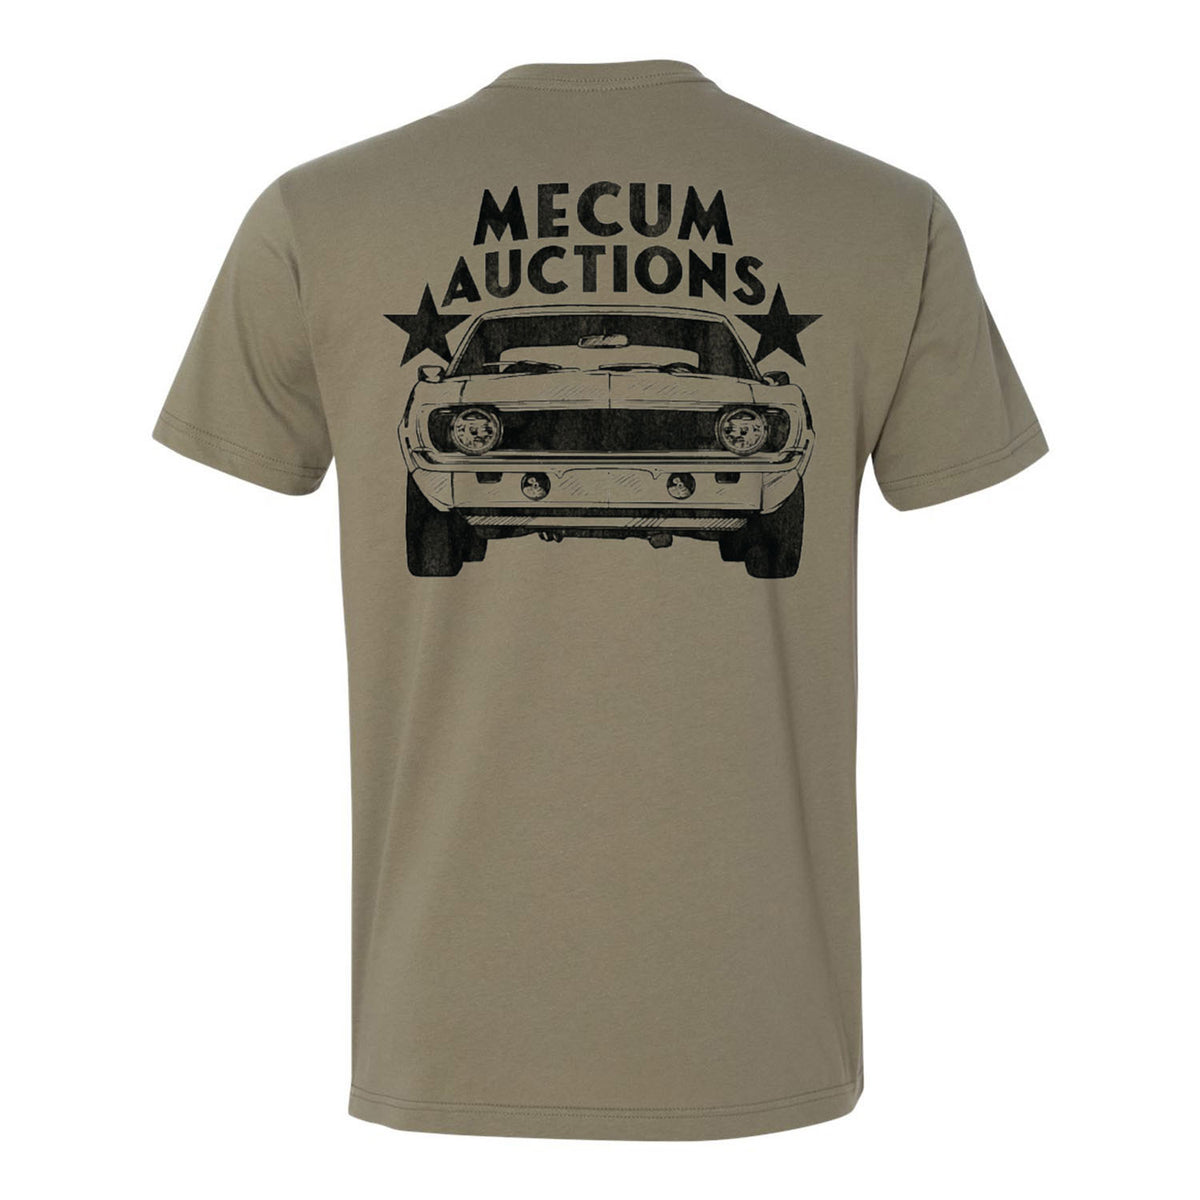 Mecum Auctions Light Olive Vintage Car T-Shirt - Back View